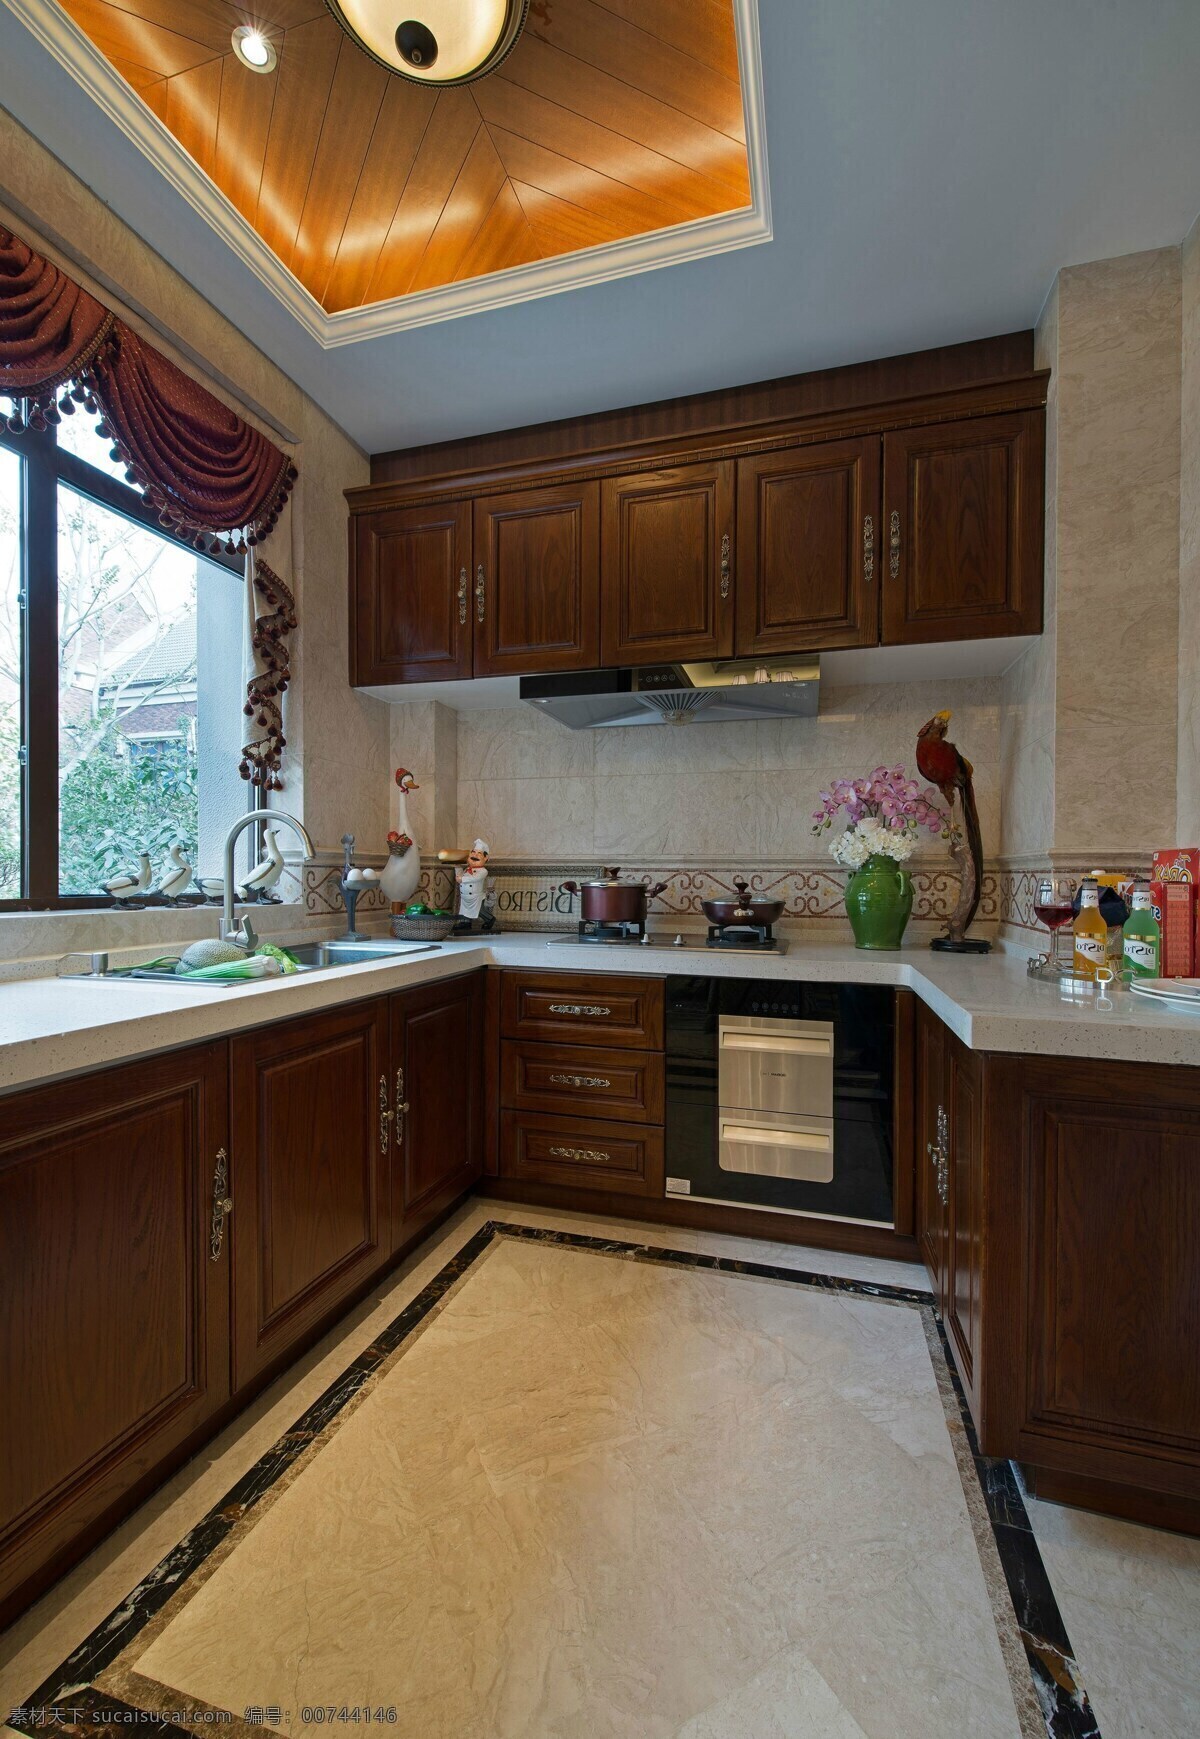 小 户型 美式 经典 厨房 装修 效果图 小户型 典雅 红木橱柜